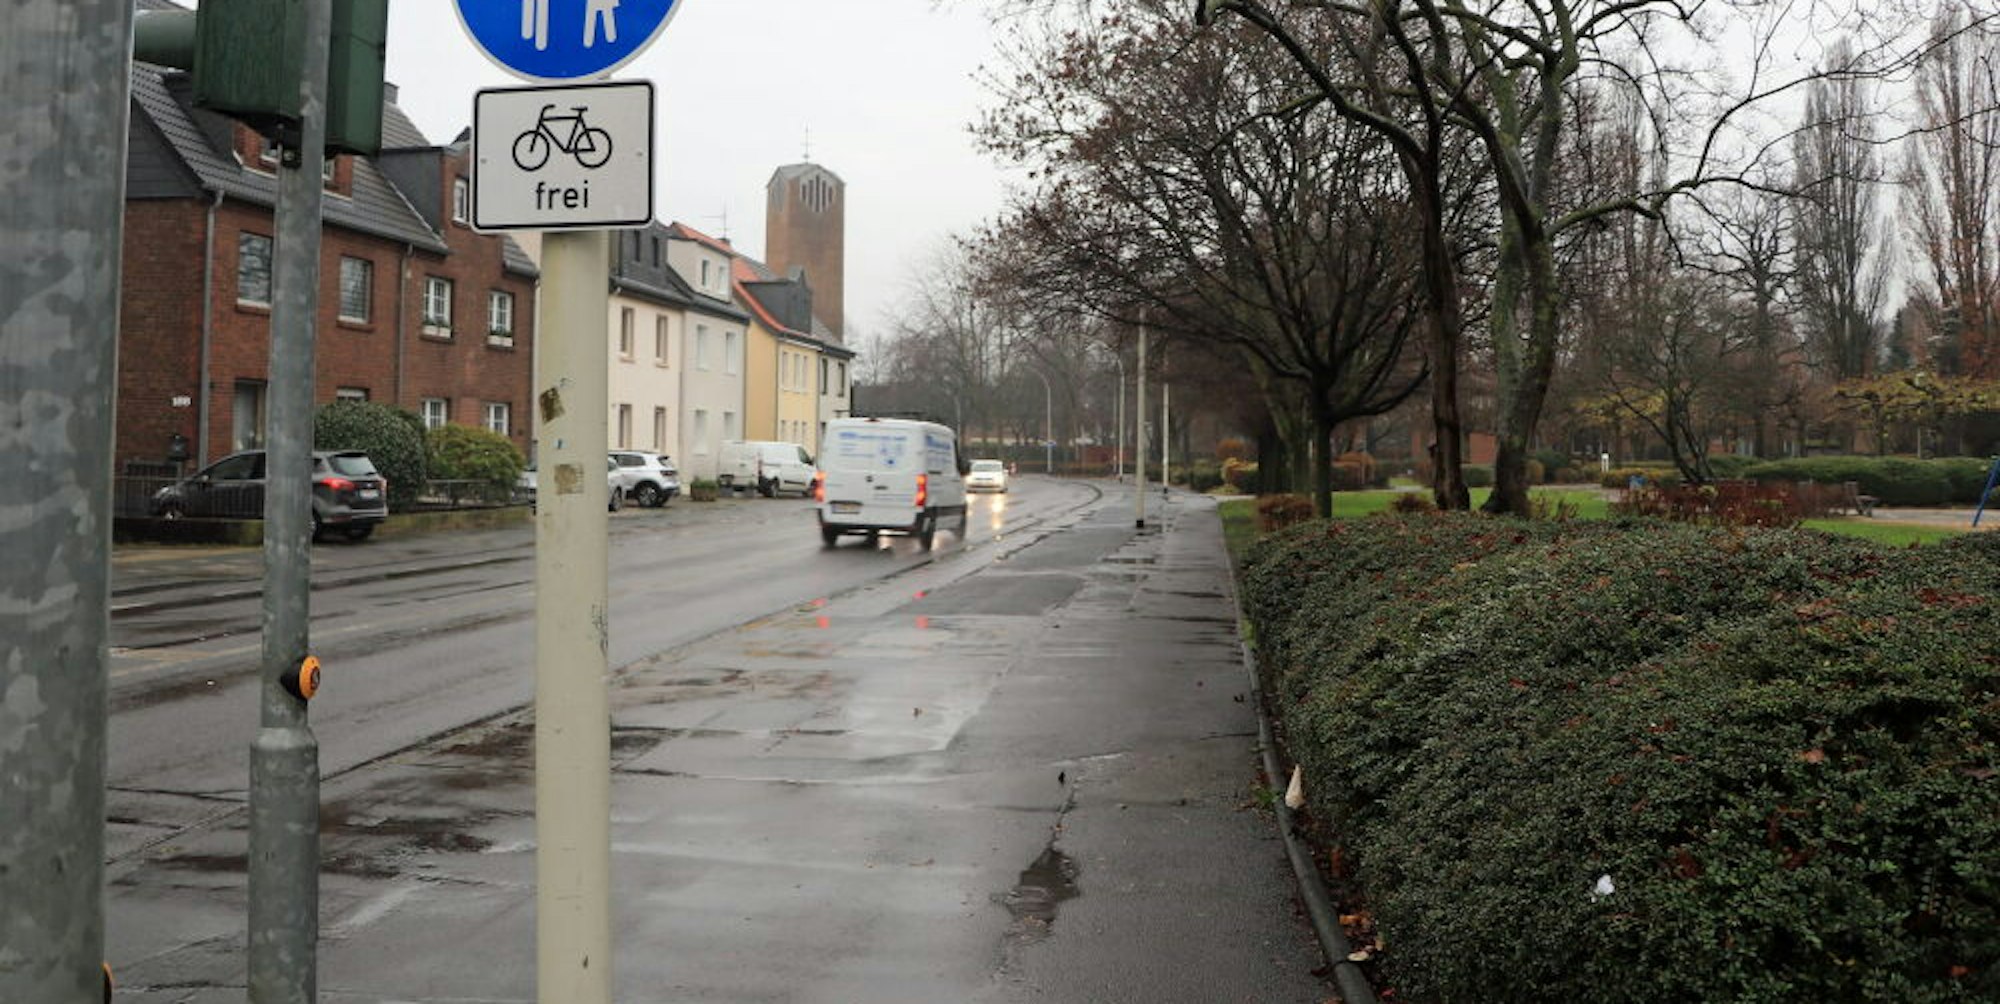 Der Weg an der Hubert-Prott-Straße kann derzeit von Fußgängern und Radfahrern gemeinsam benutzt werden. Der Ausschuss stimmte für separate Fuß- und Radwegstreifen.